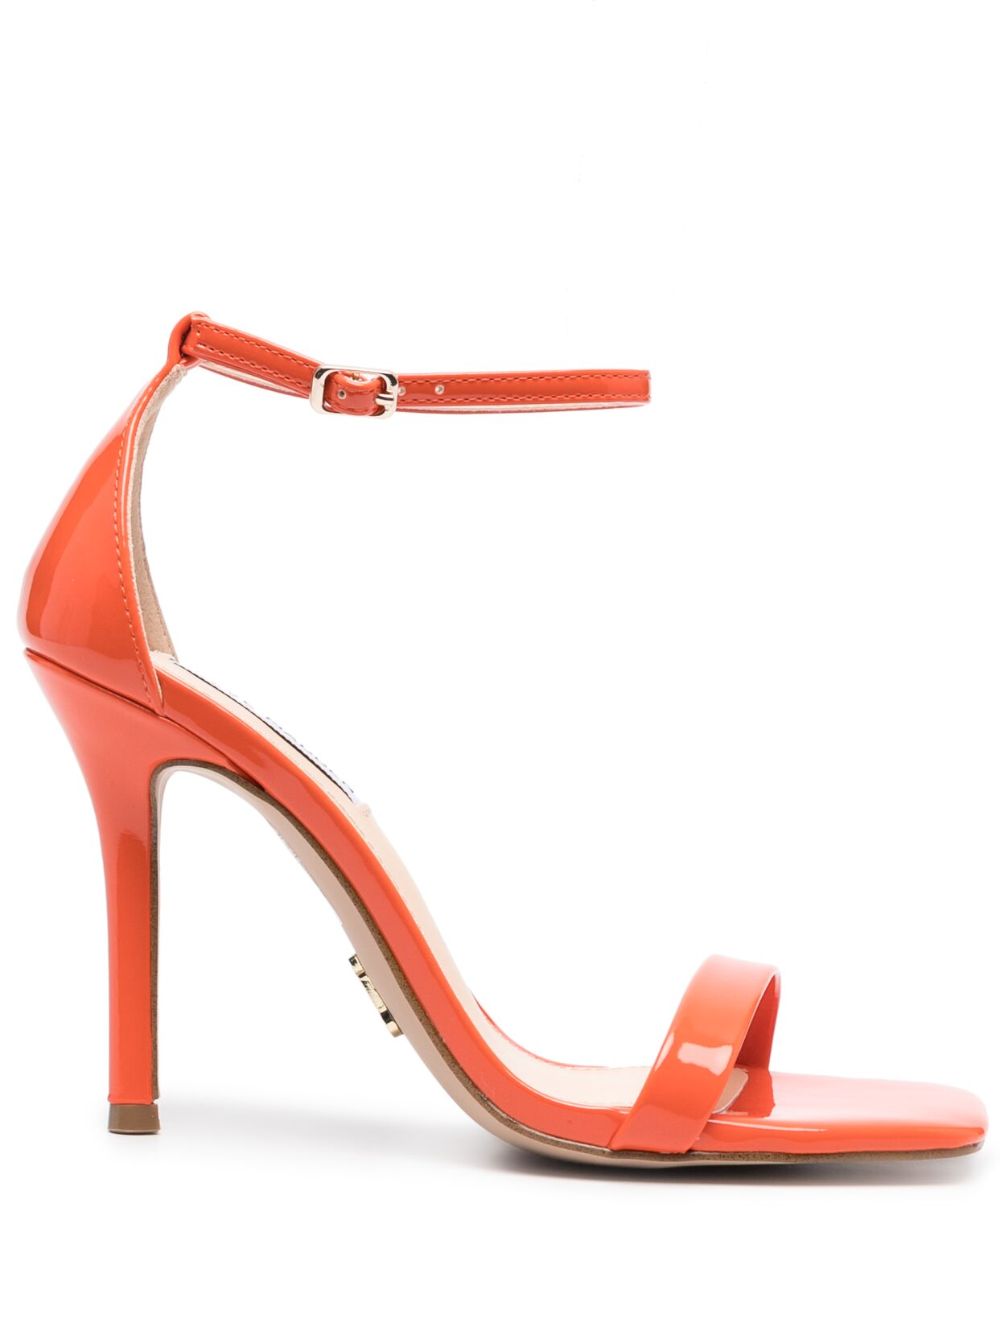 Sandales femme orange